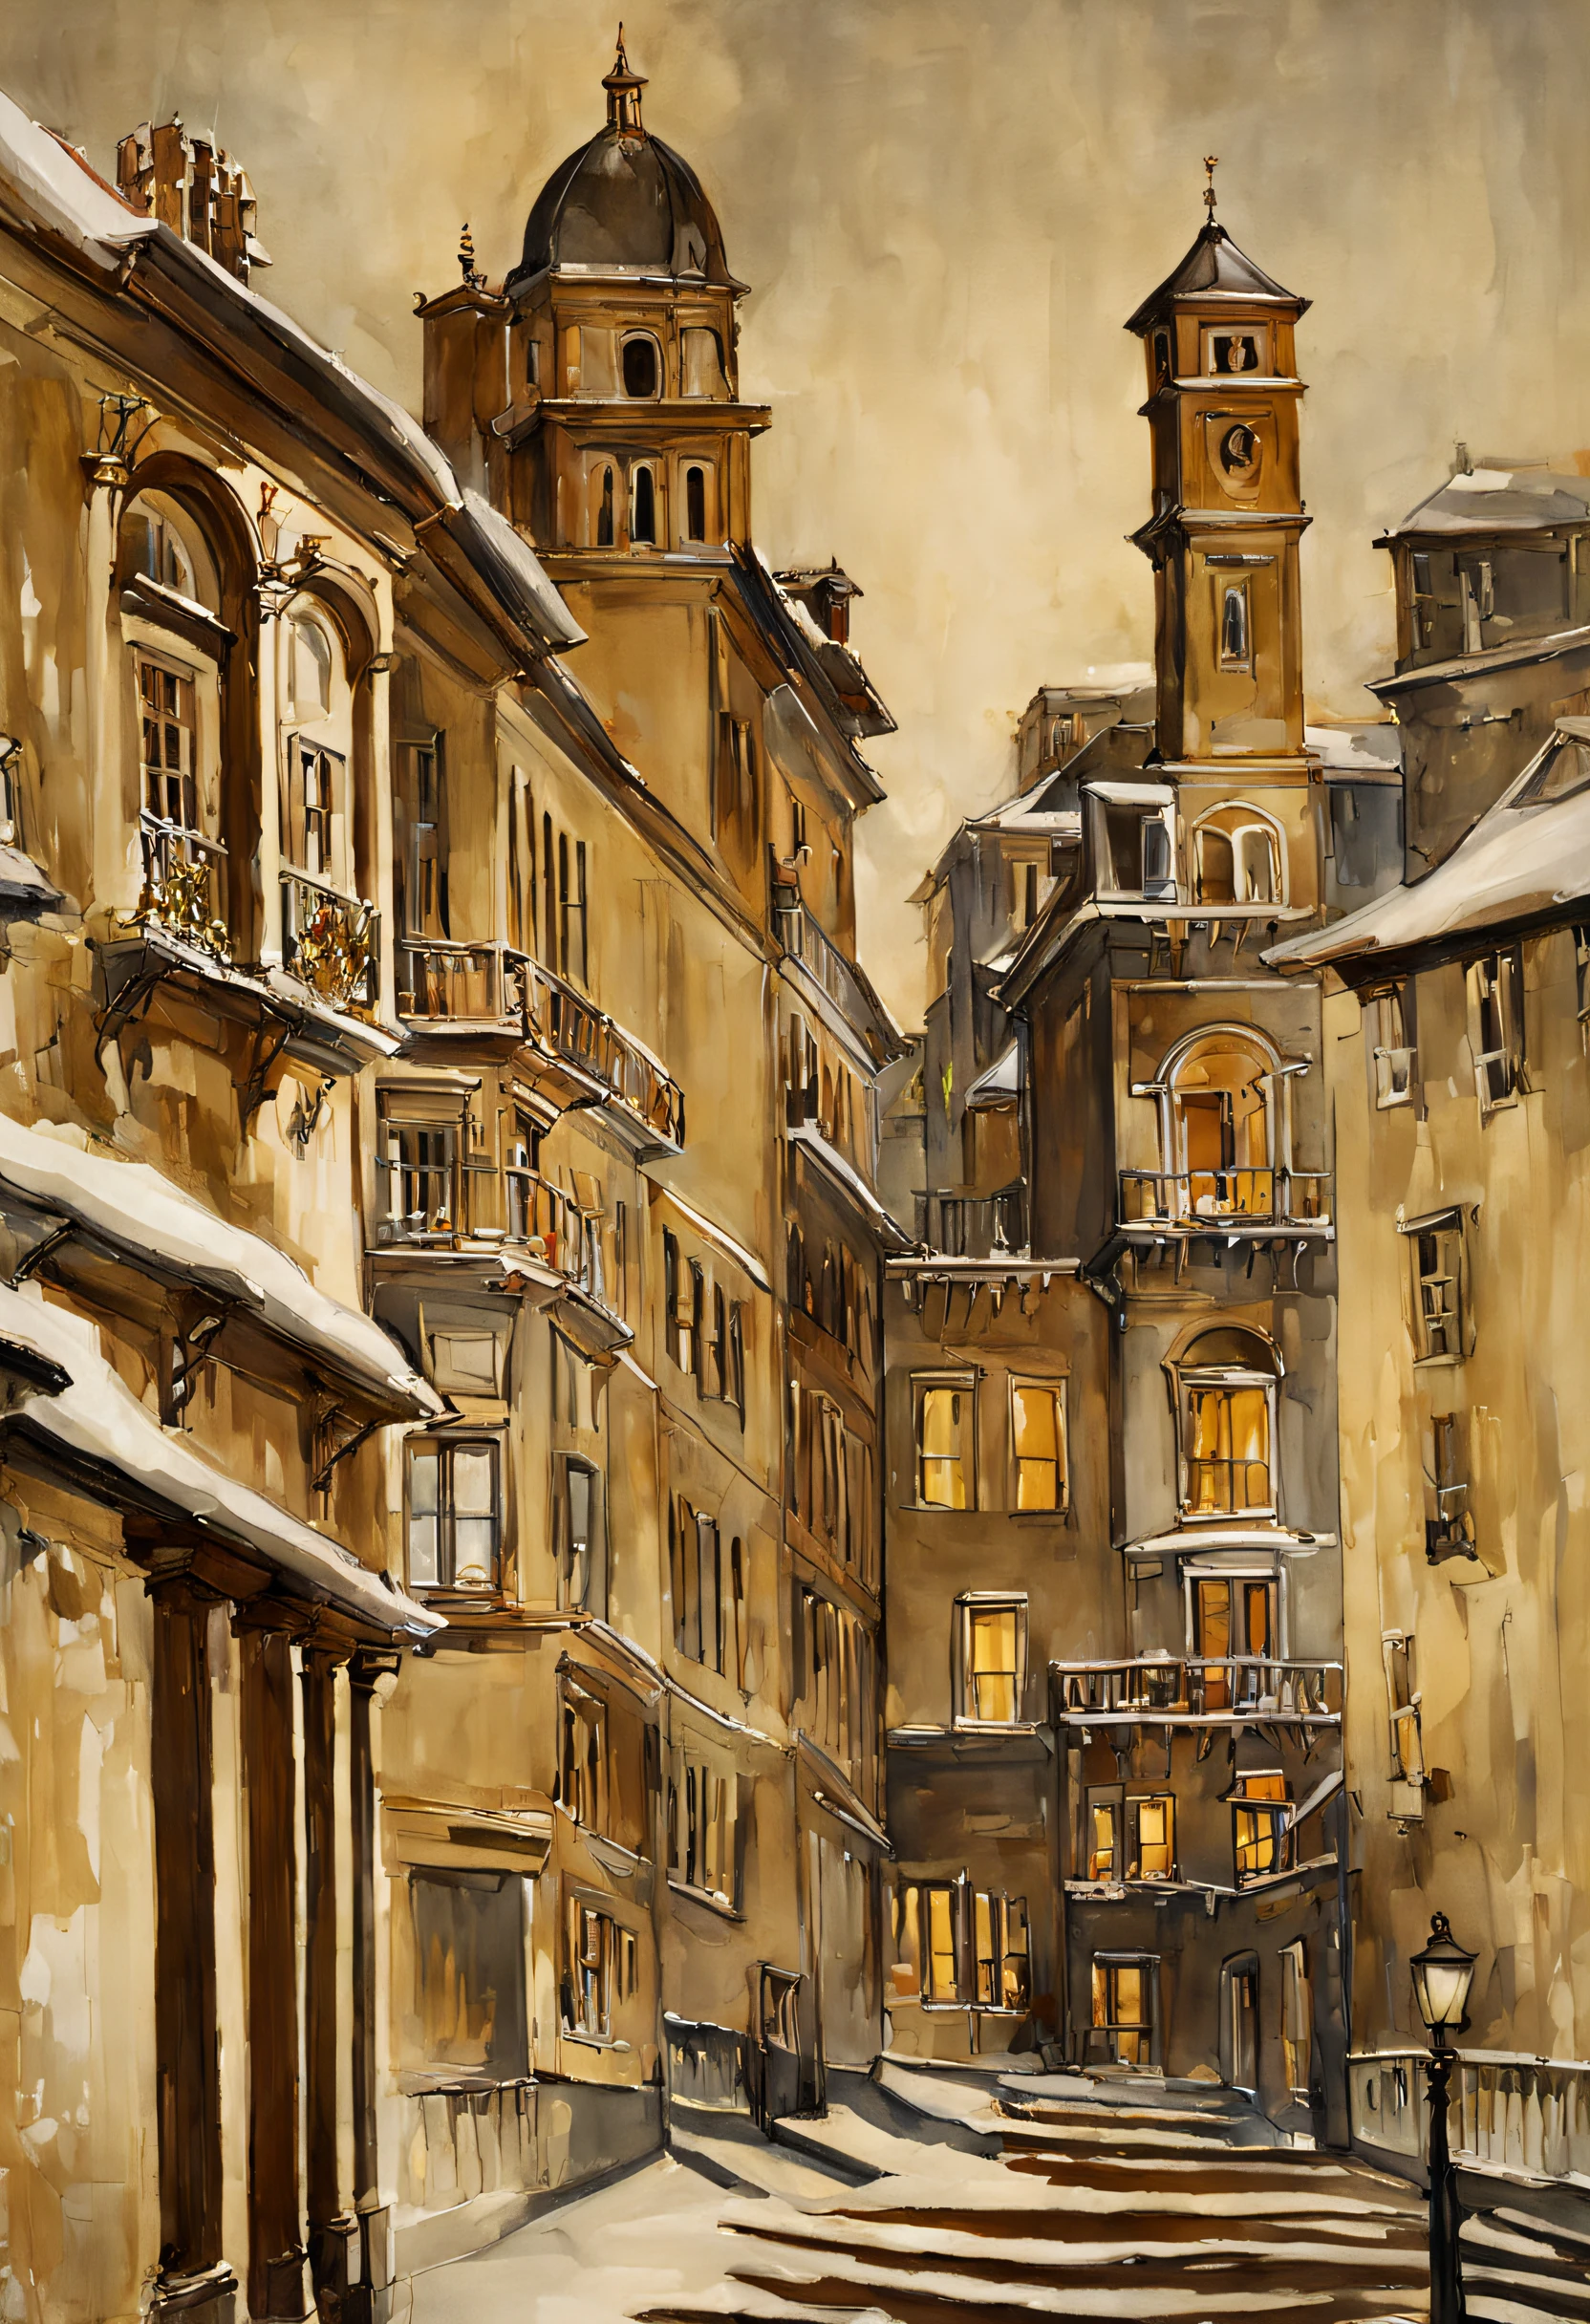 (Aquarell im Sargent-Stil)、(höchste Qualität、Meisterwerk) Nachtlicht , Winter und Schnee , altes Gebäude, elegant und alt , etwas verschlechtert ,